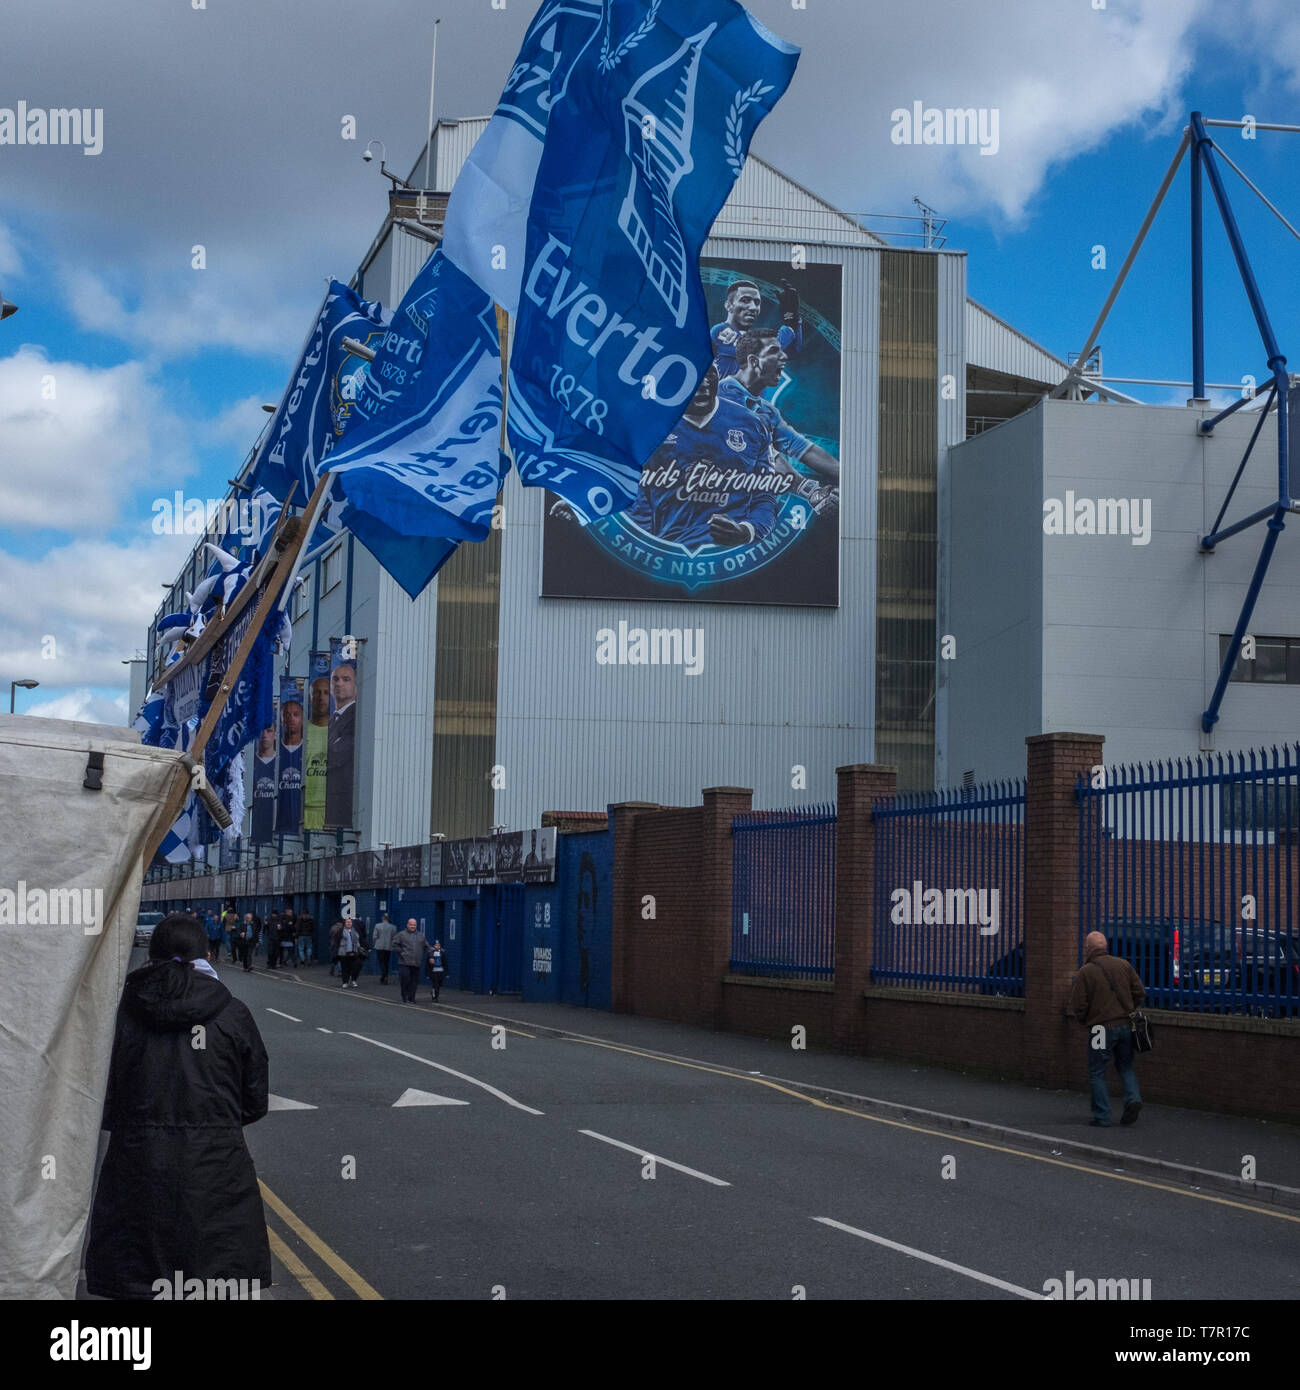 Everton, Liverpool, Regno Unito, aprile, 17, 2016: folle di sostenitori inizia a raccogliere nelle strade a Everton Calcio Club per un gioco di premiership rispetto a Southampton, bandiere e sciarpe in Everton colori può essere visto, contro un luminoso cielo blu Foto Stock